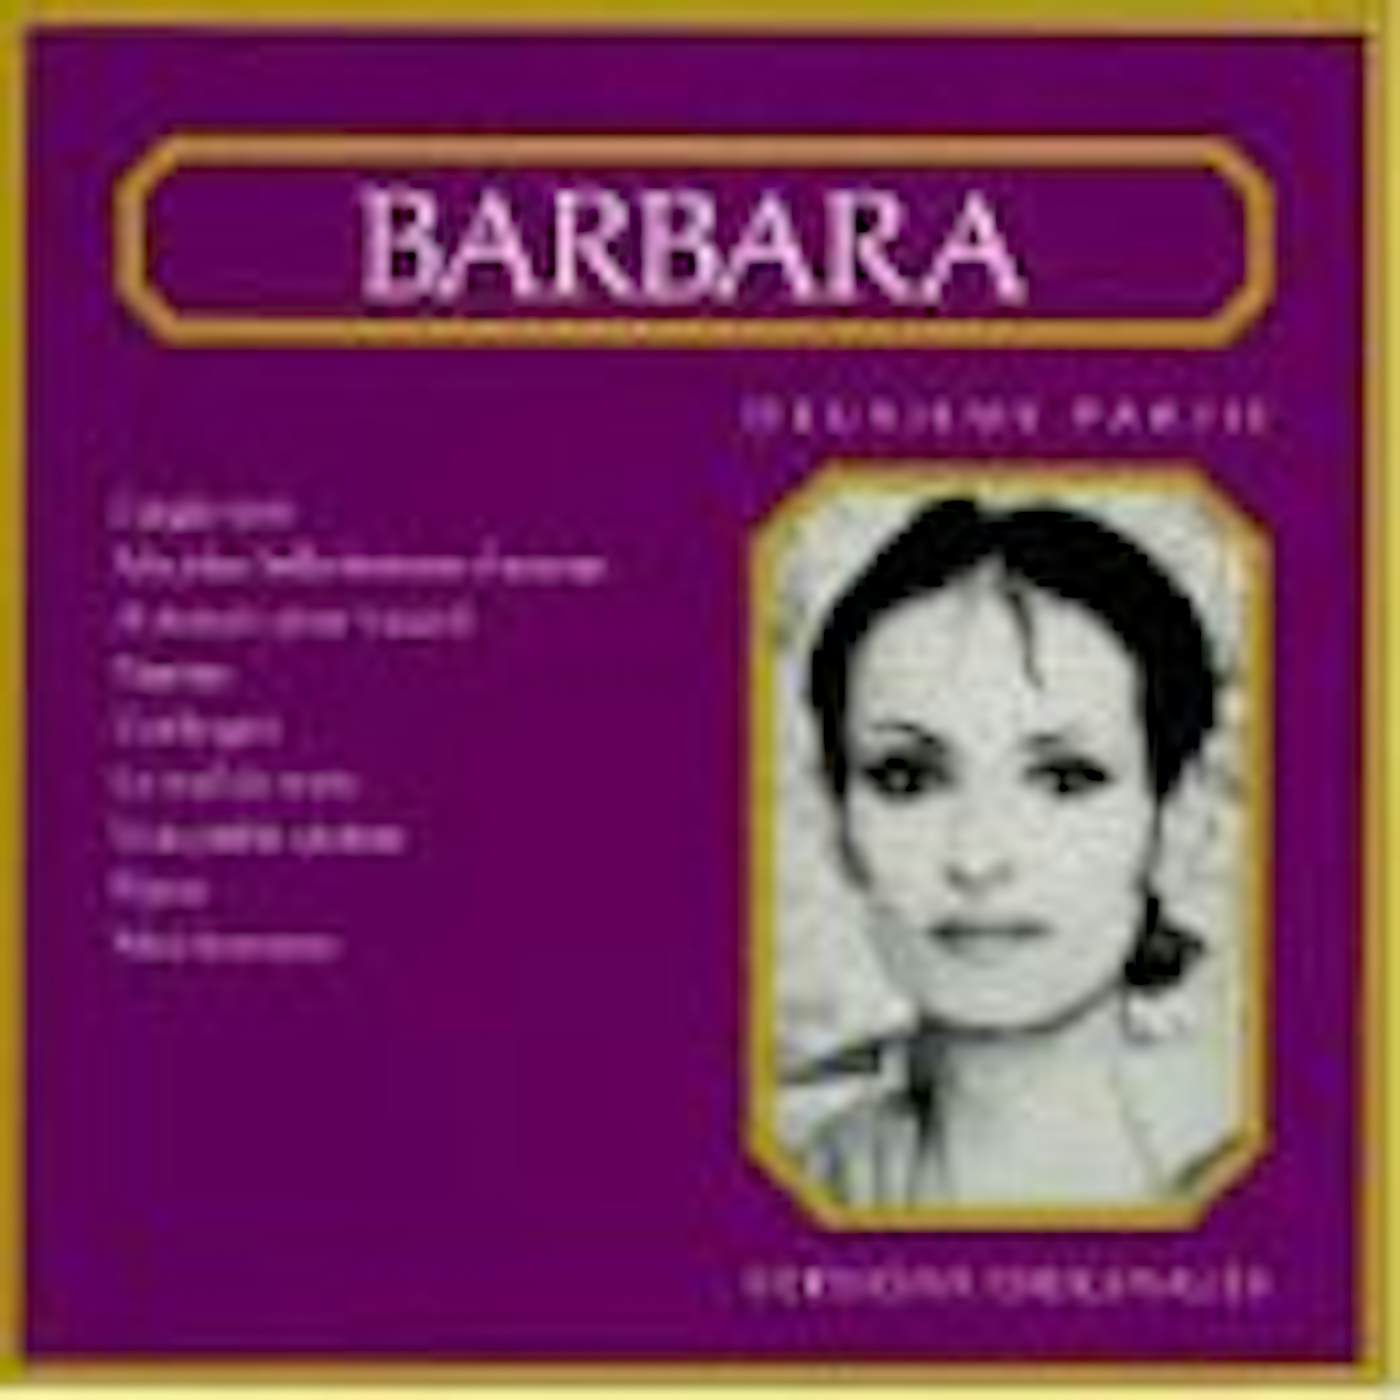 Barbara DEUXIEME PARTIE CD